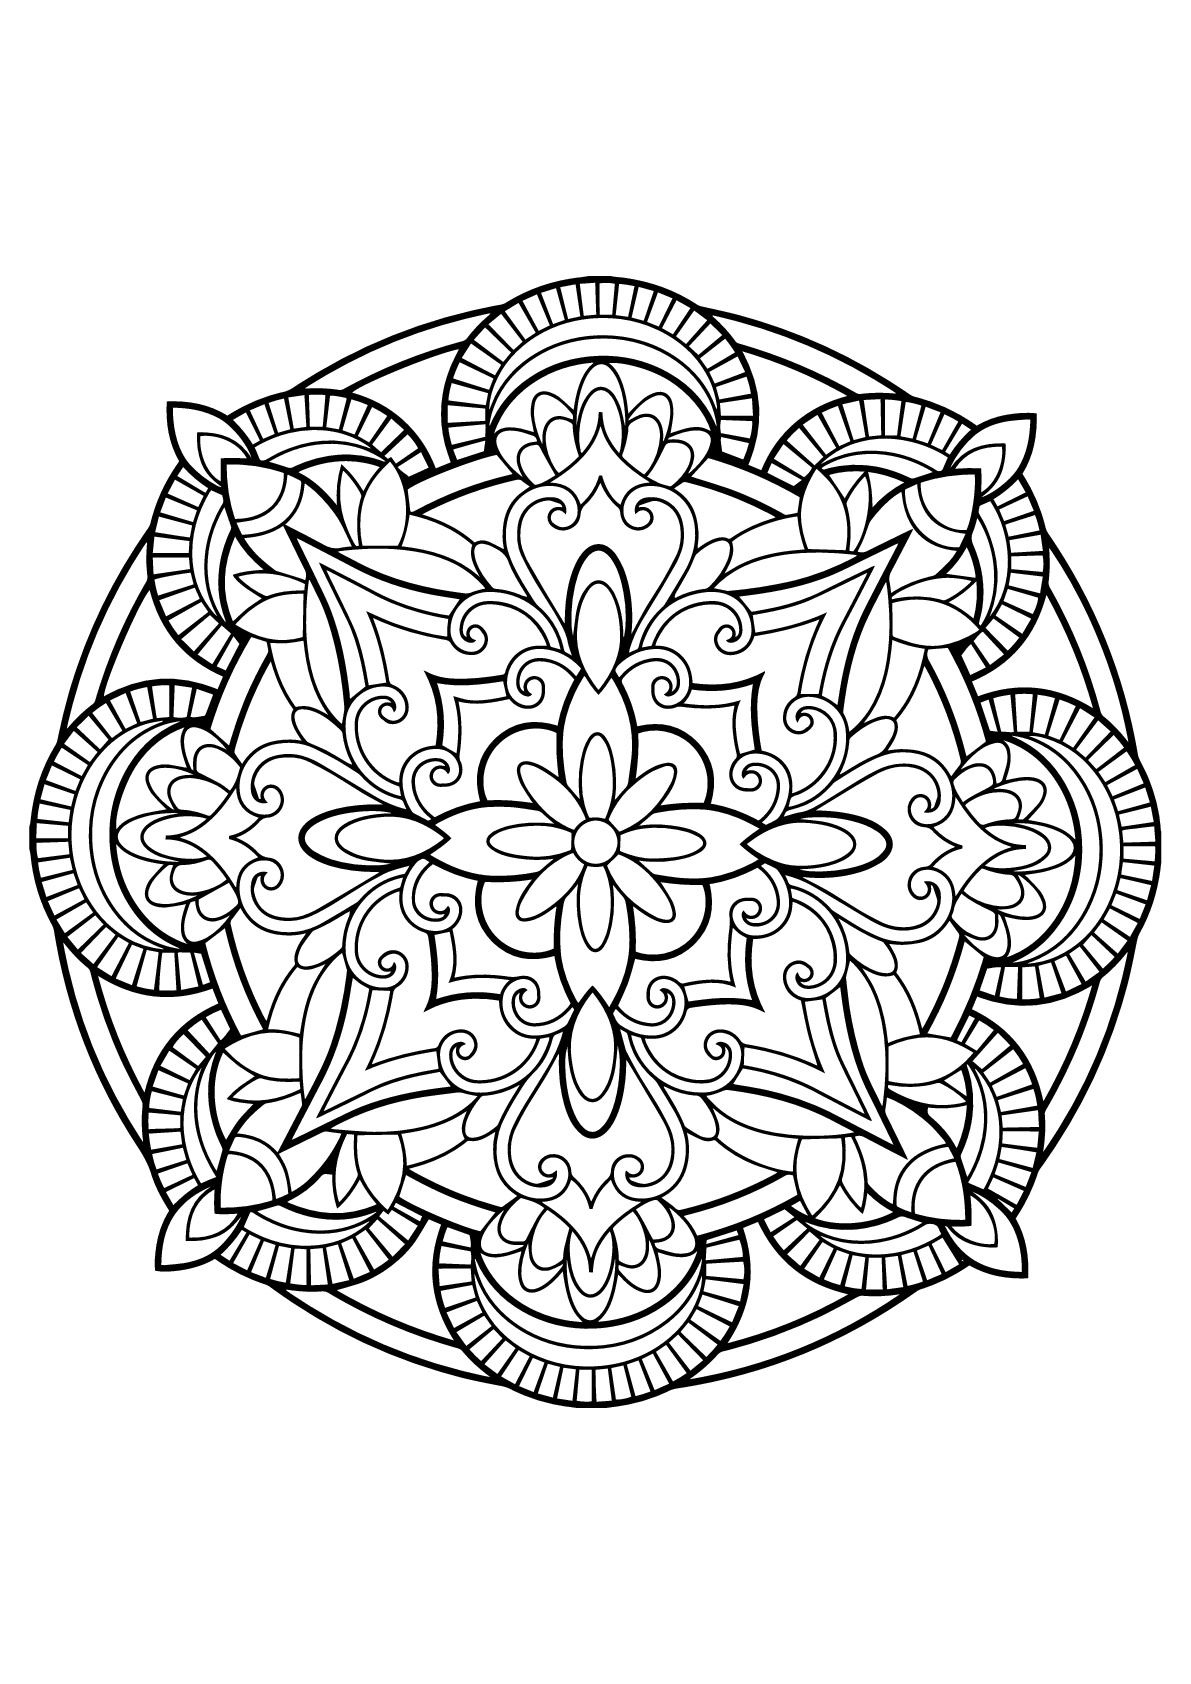 Mandala-para-descarregar-em-pdf-7 - Mandalas - Coloring Pages for Adults